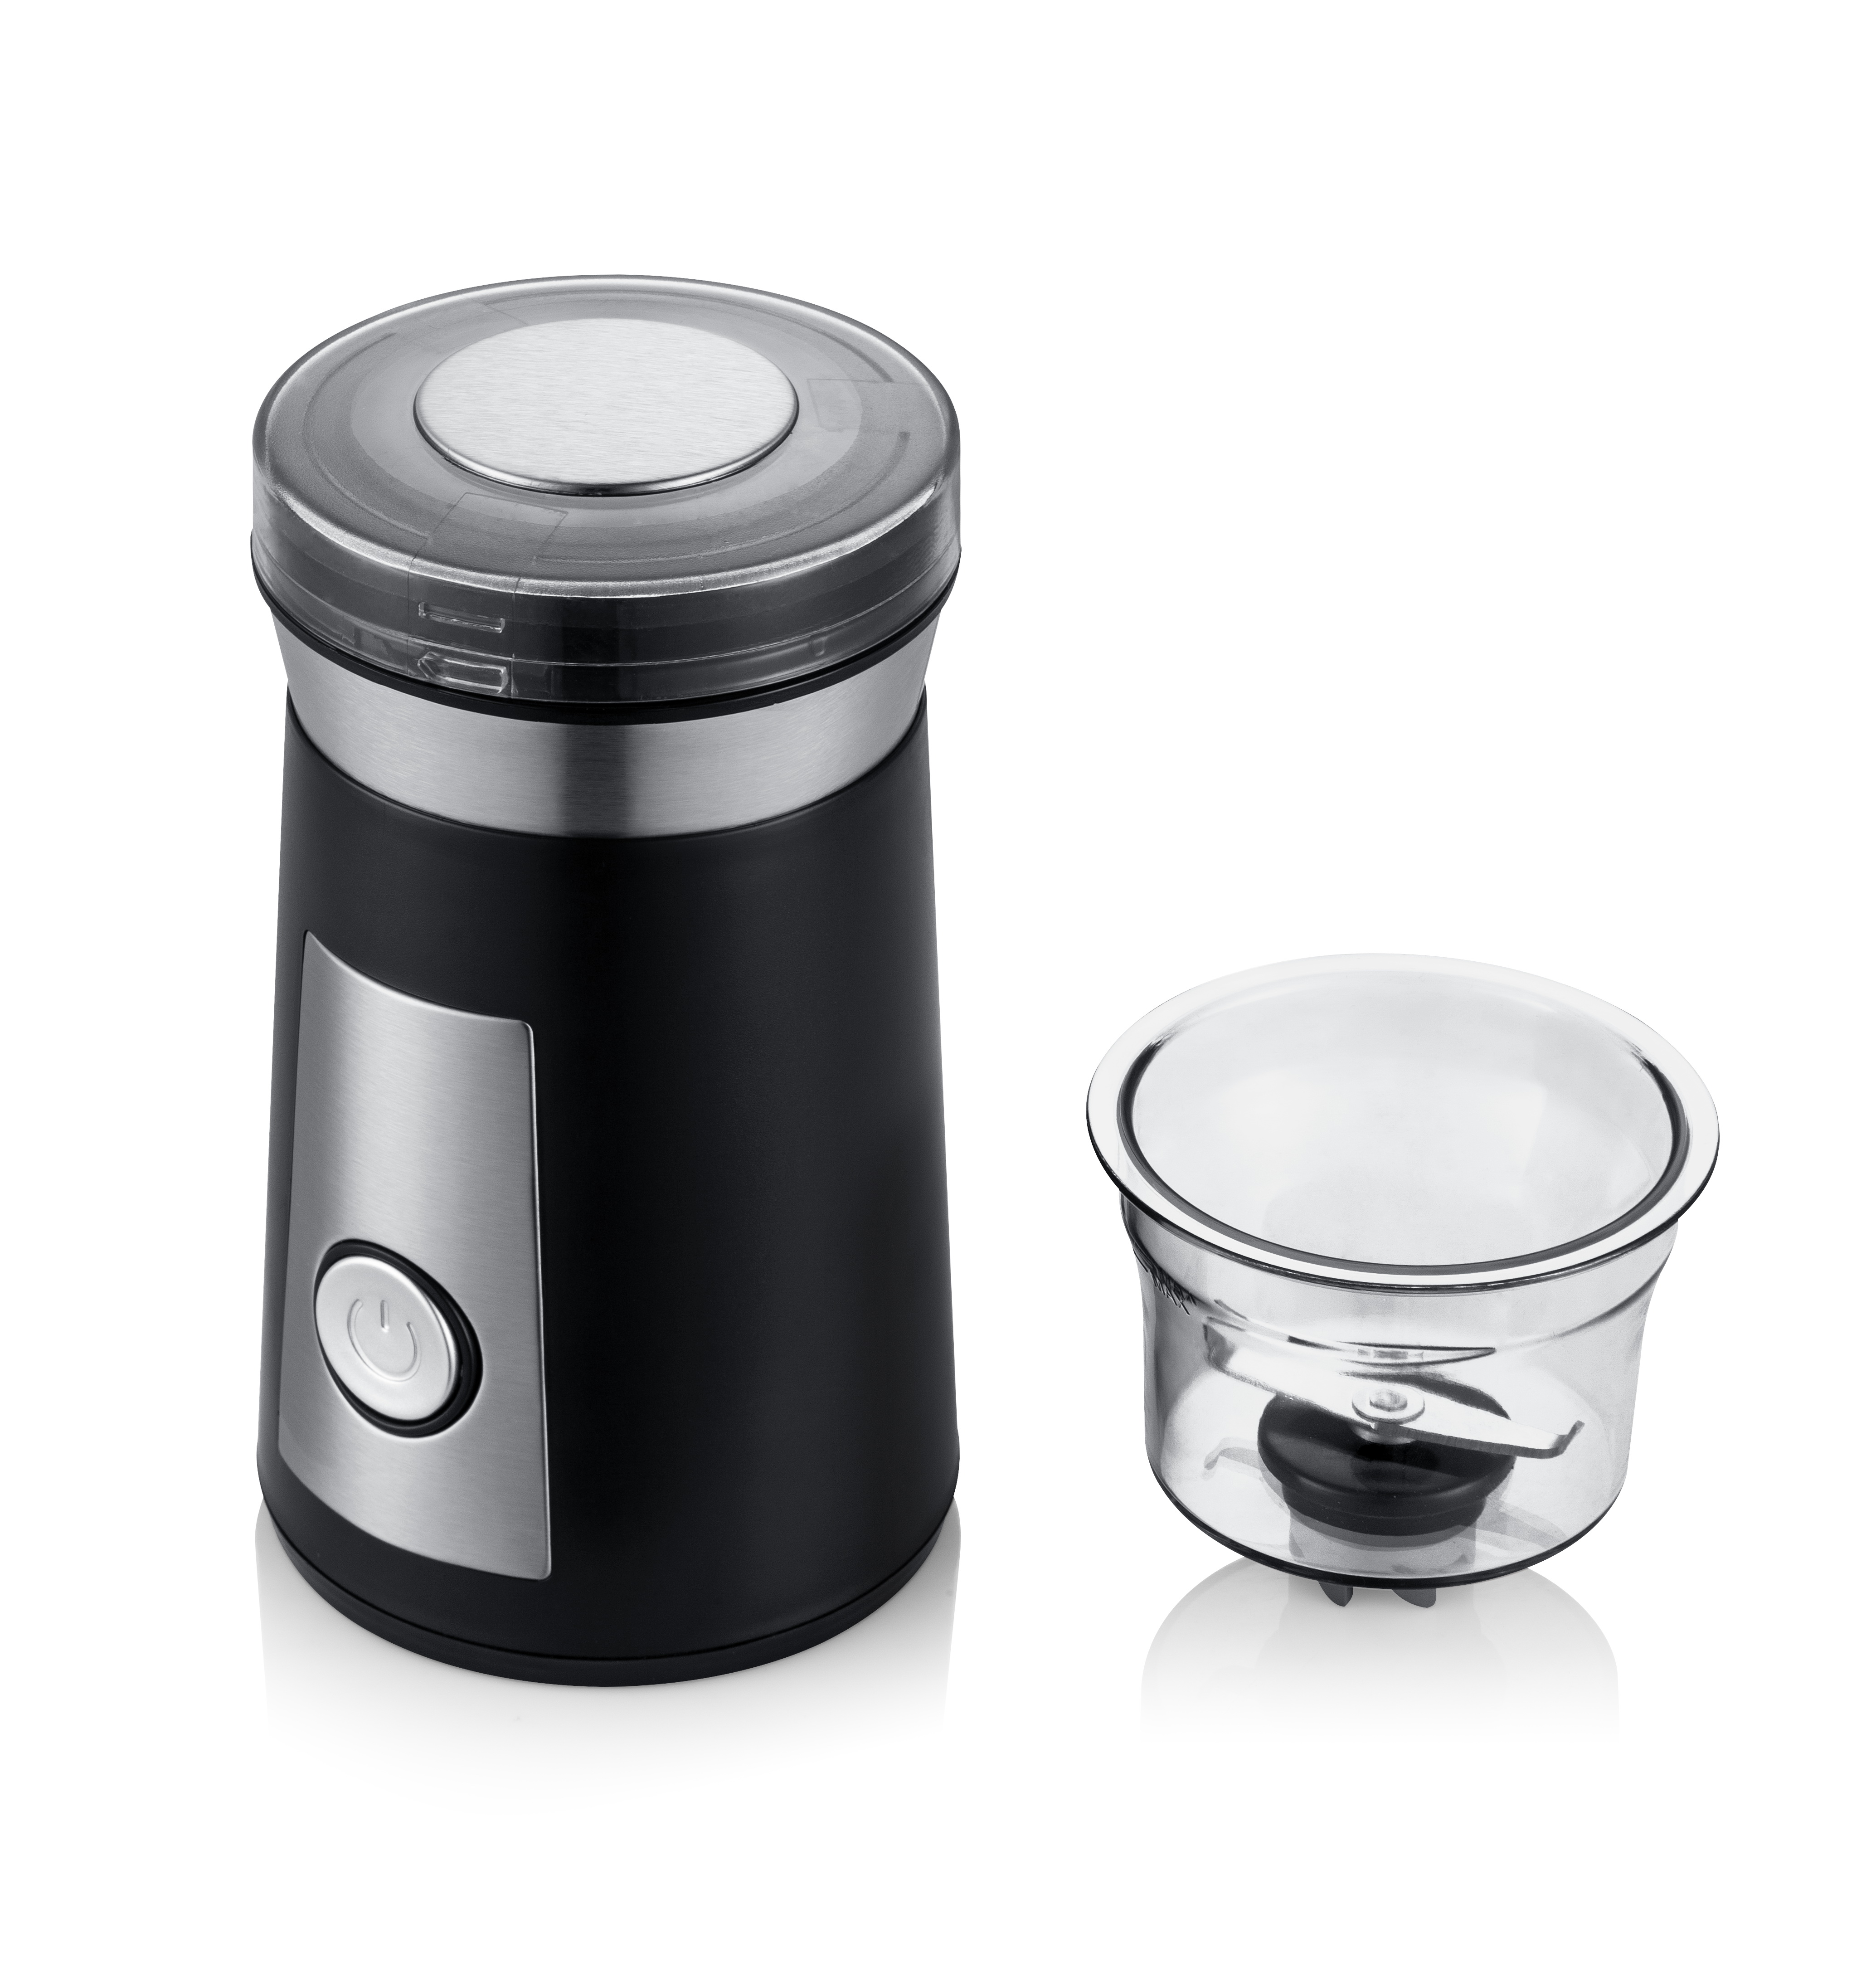 coffee grinder / blade grinder